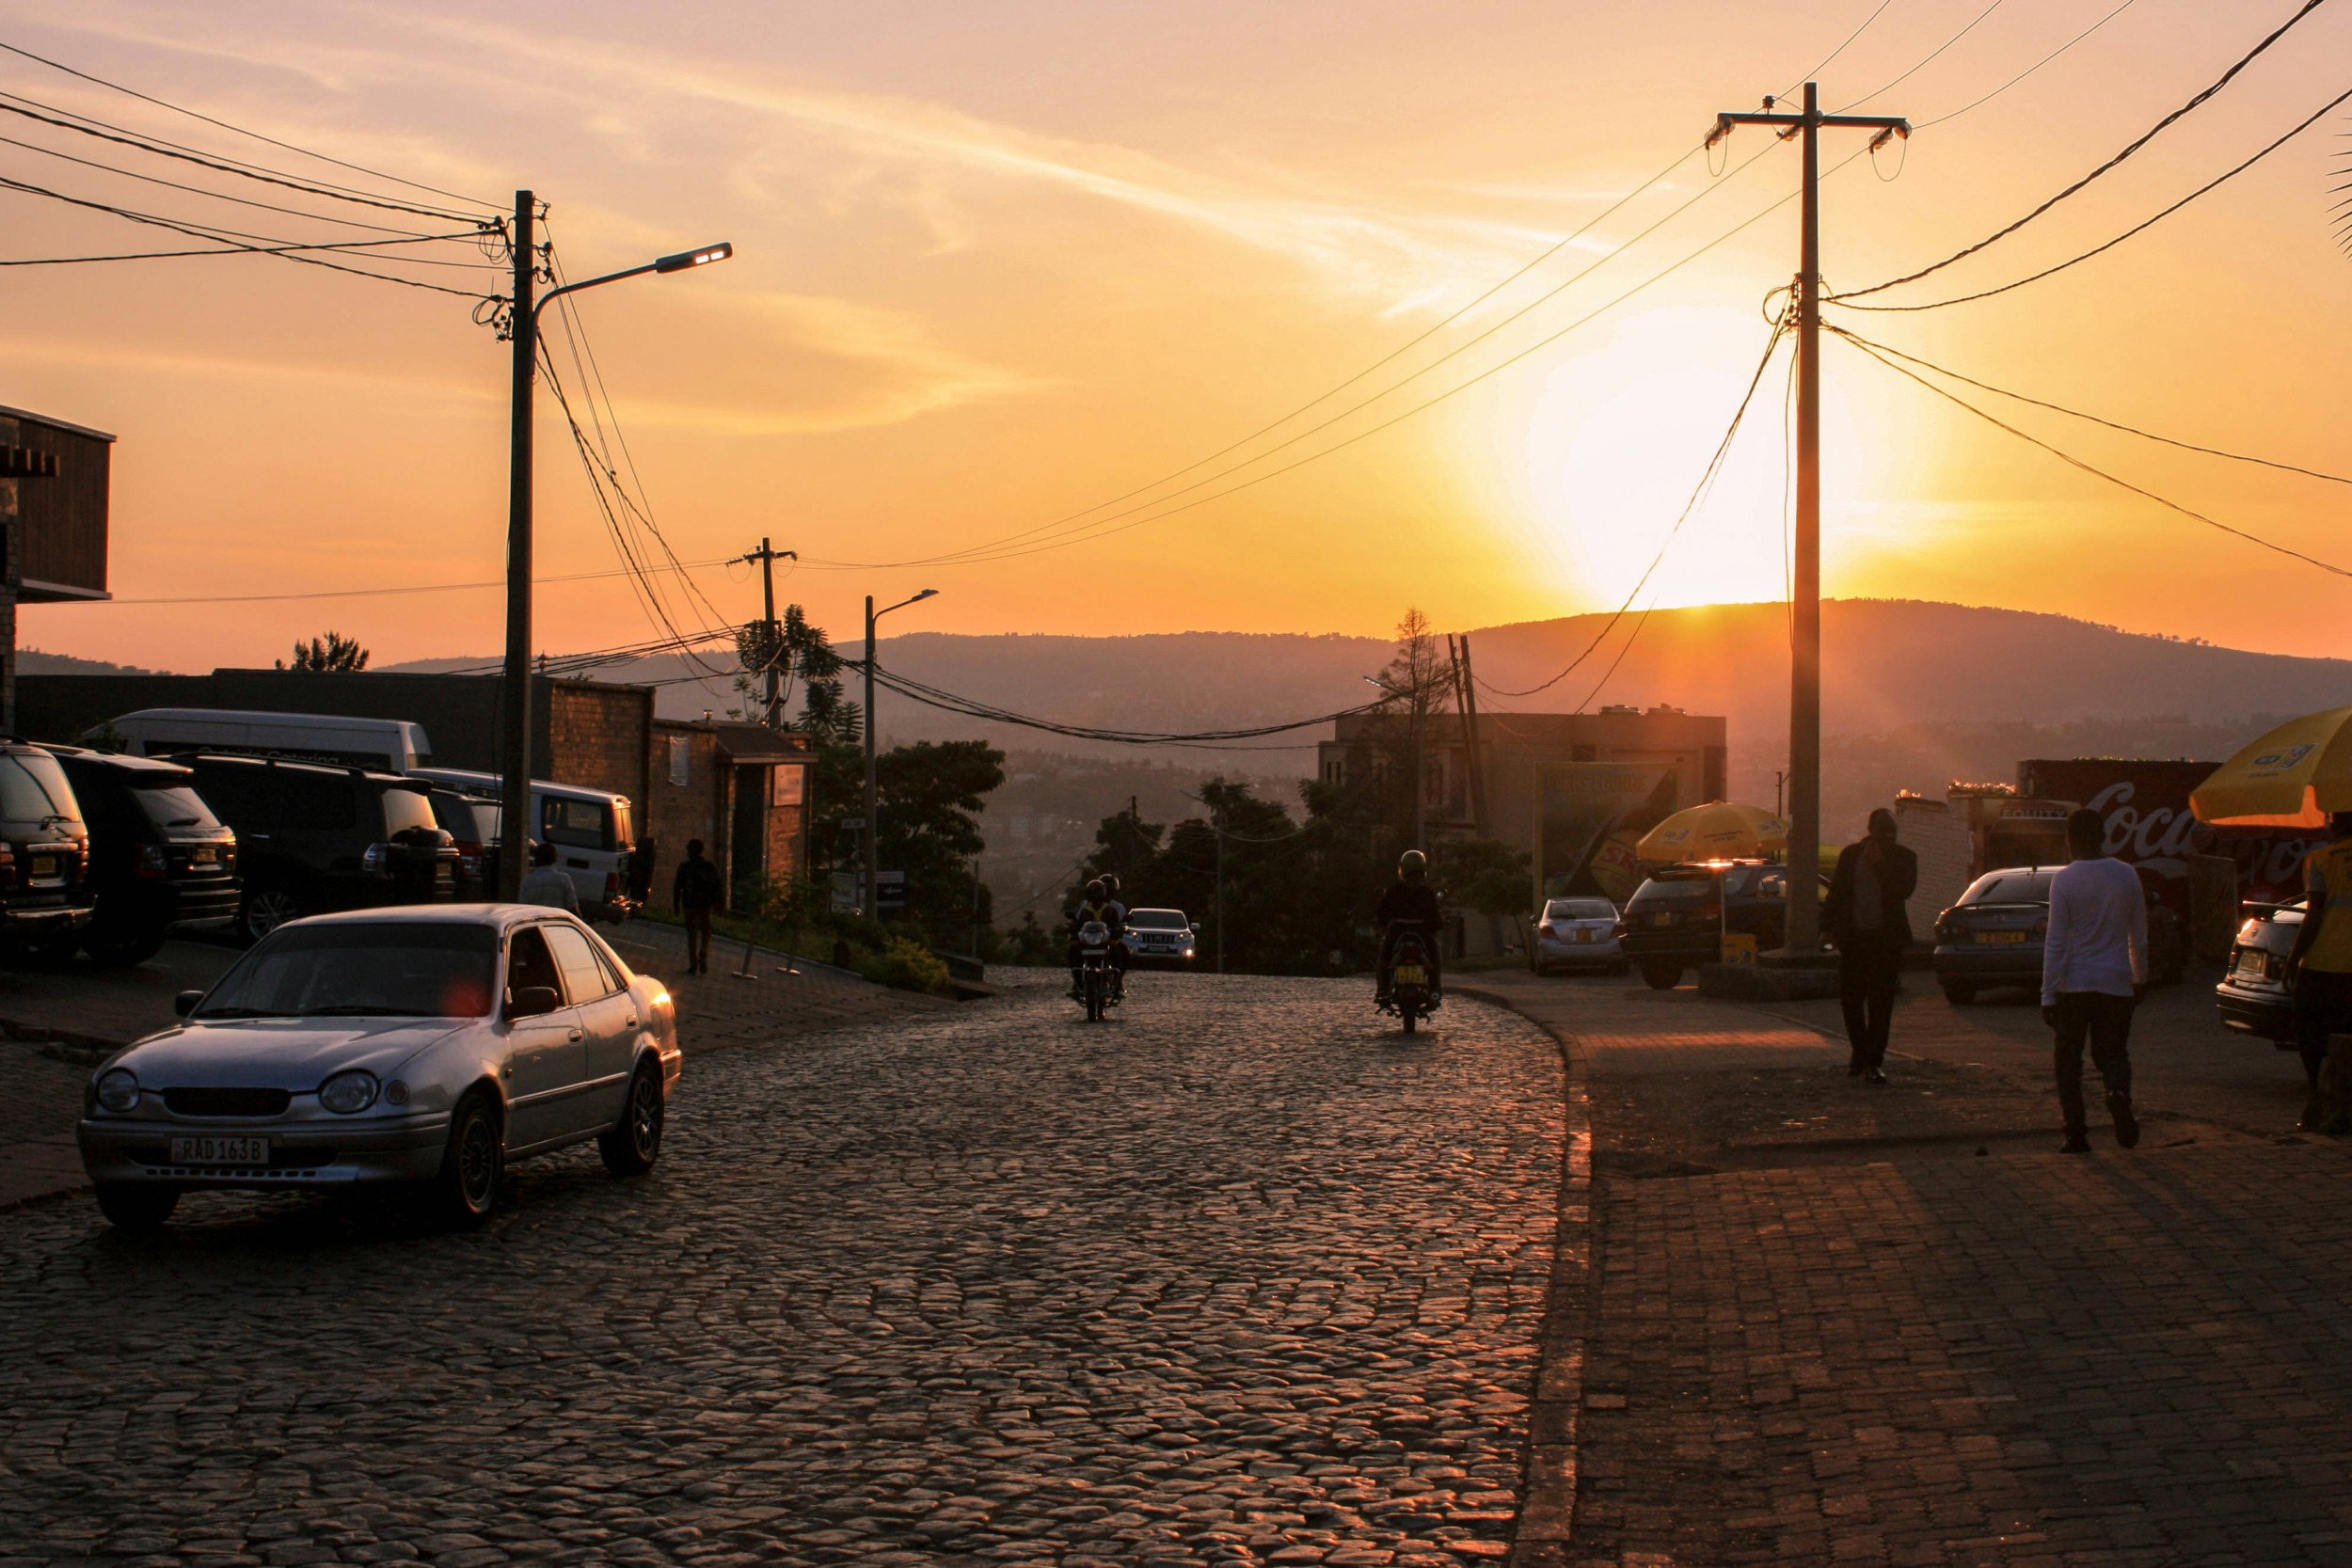 Kigali gilt als eine der sichersten Städte Afrikas